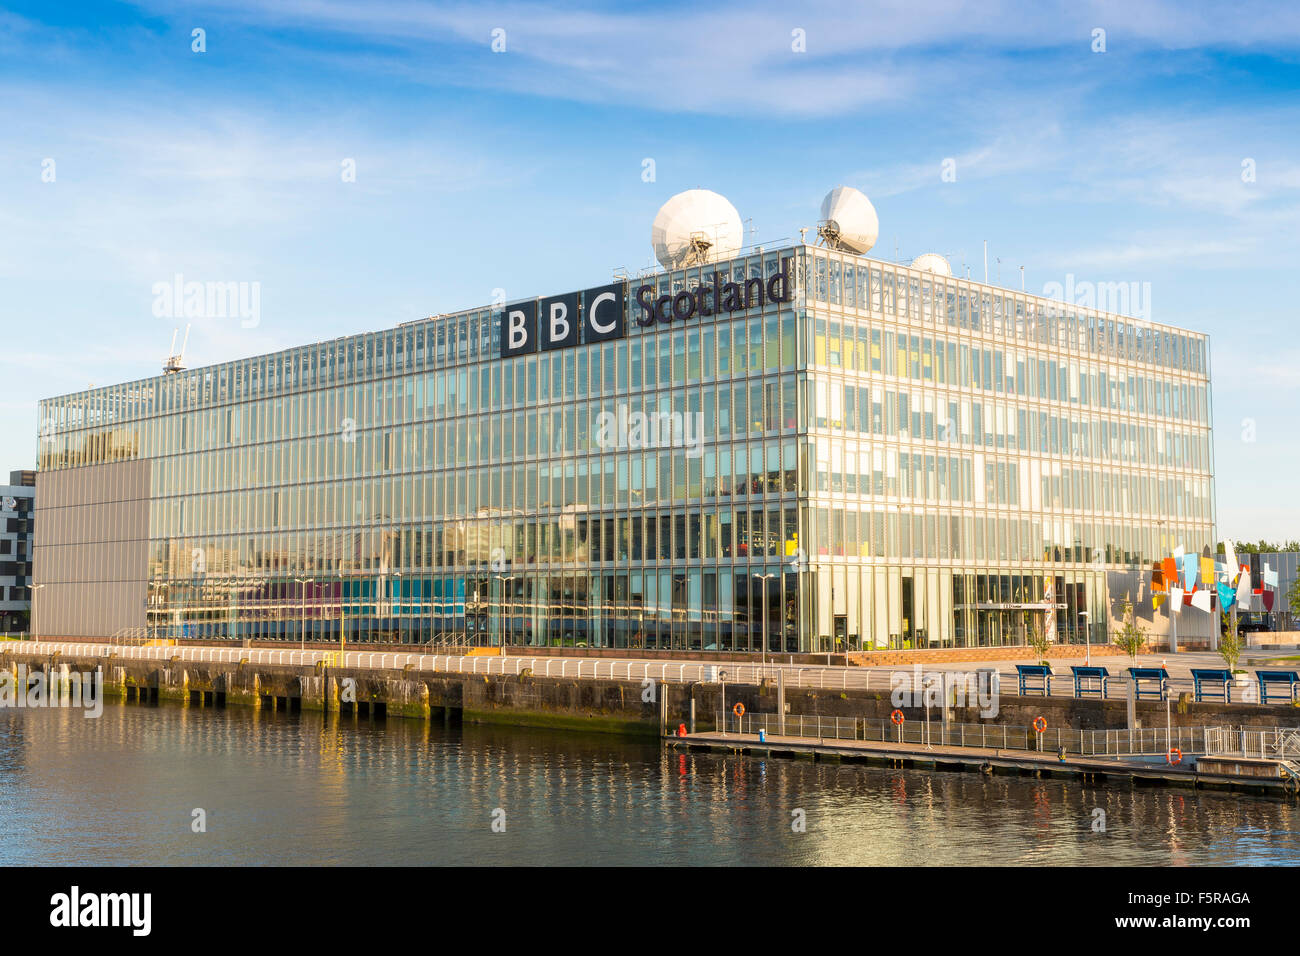 GLASGOW, Scotland, UK - 11 juin 2015 : La BBC Scotland studios tv sur les rives de la Clyde, Glasgow, Écosse, Royaume-Uni Banque D'Images